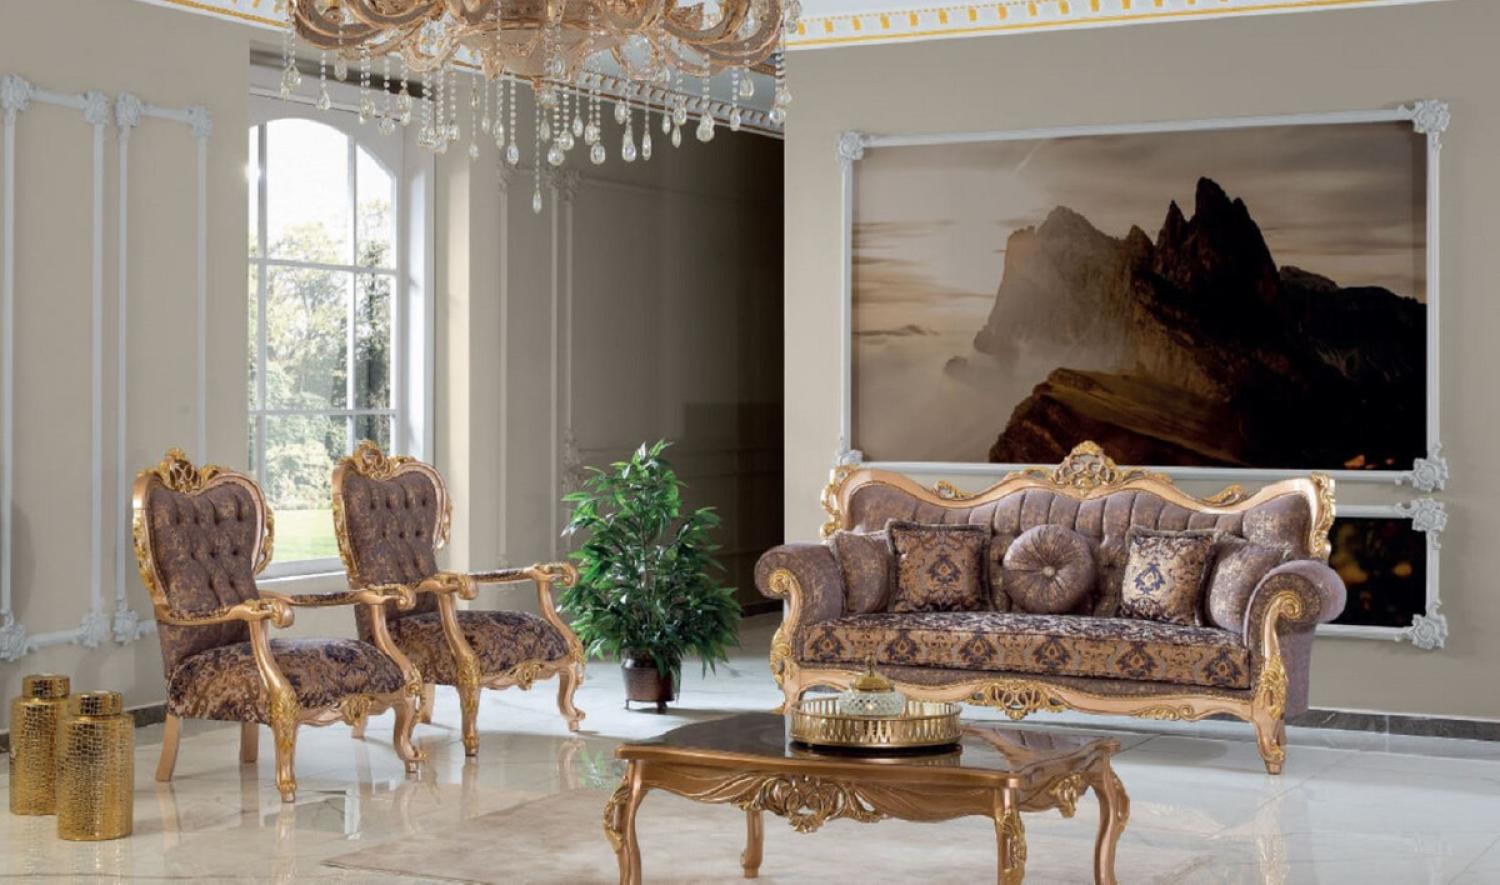 Casa Padrino Luxus Barock Wohnzimmer Set Lila / Grau / Gold - 2 Sofas & 2 Sessel & 1 Couchtisch - Handgefertigte Wohnzimmer Möbel im Barockstil - Edel & Prunkvoll Bild 1